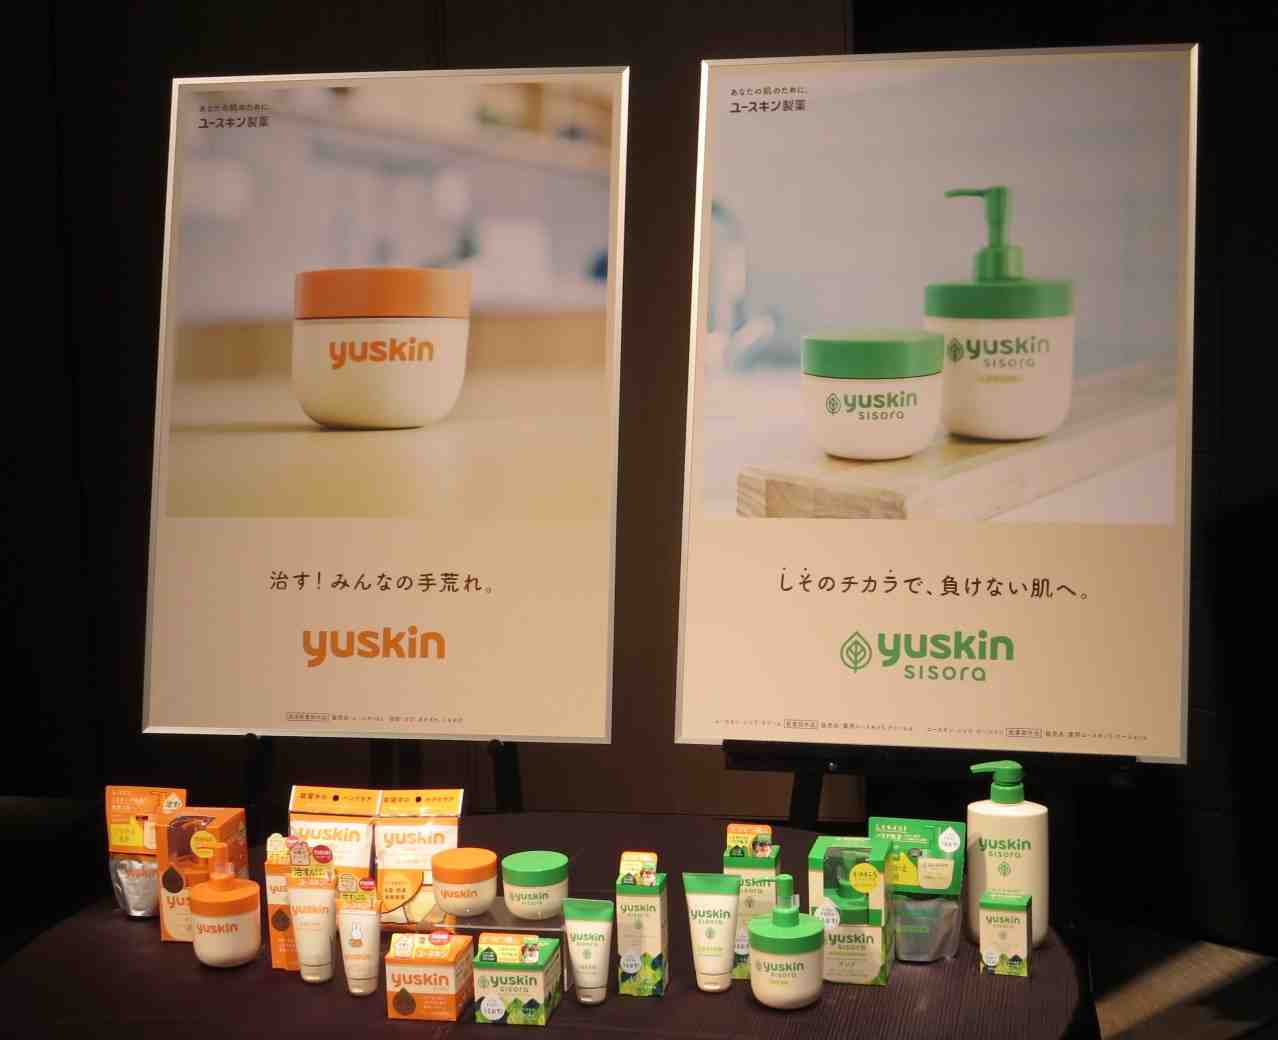 ユースキン製薬が原点回帰で商品名、企業ロゴなど刷新